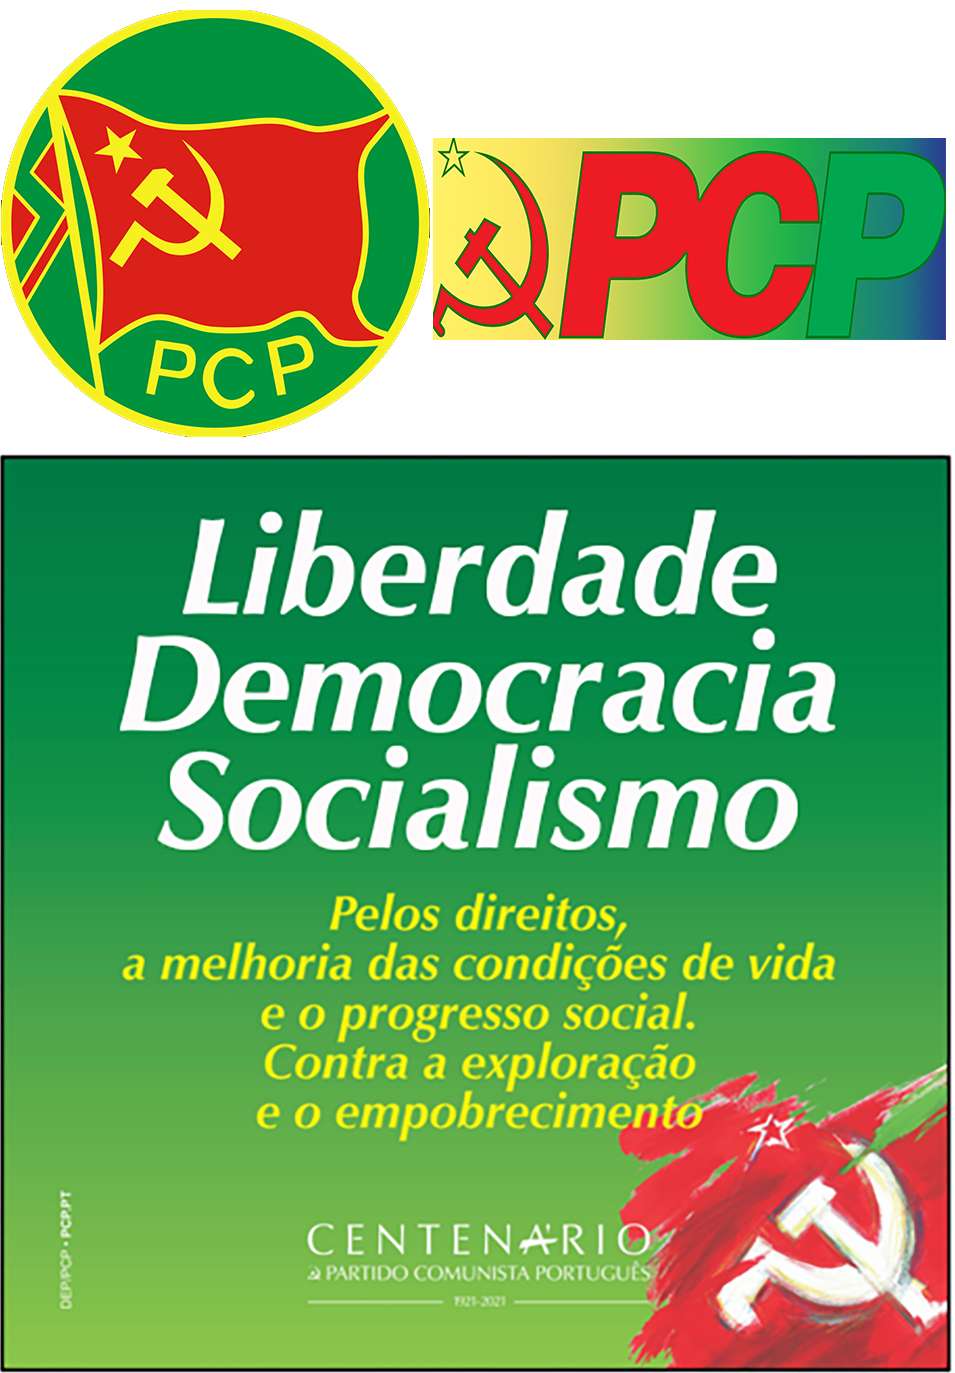 Liberdado Democracia Socialismo Pelos direitos a melhoria das condições de vida e o progresso social. Contra a exploração e o empobrecimento